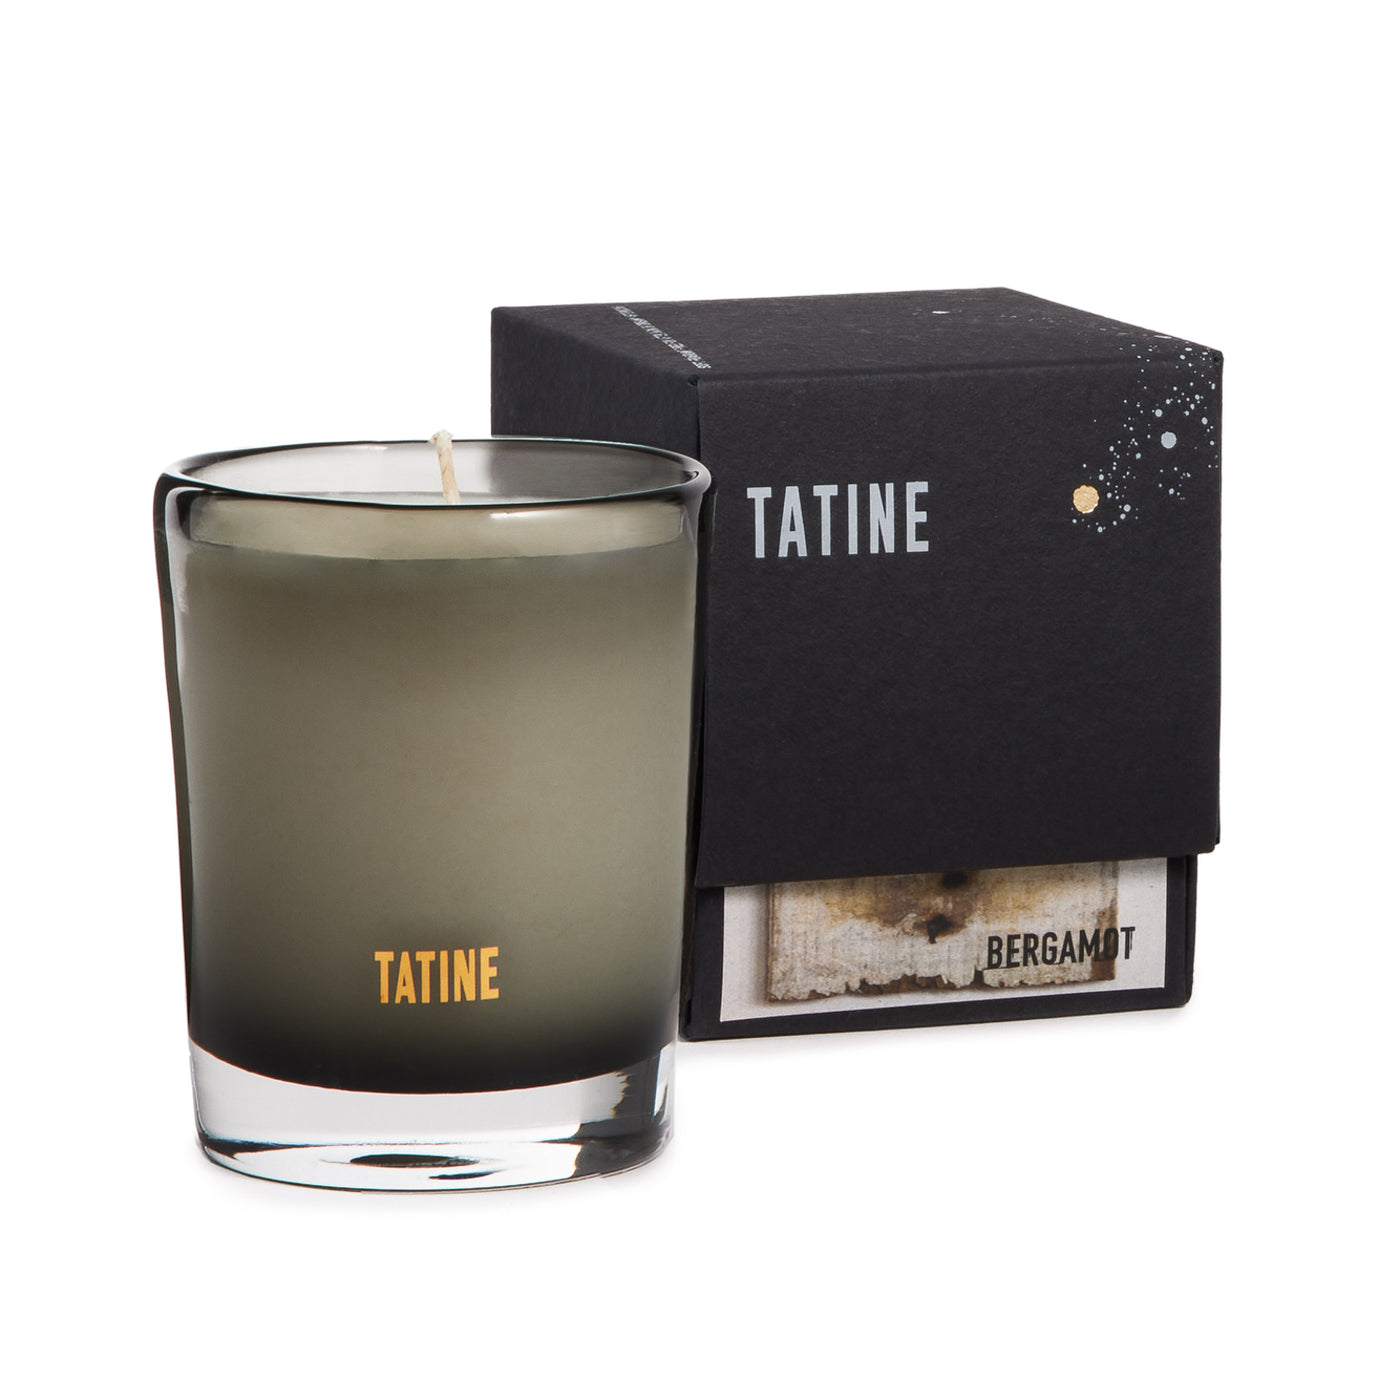 Bergamot Tatine Candle